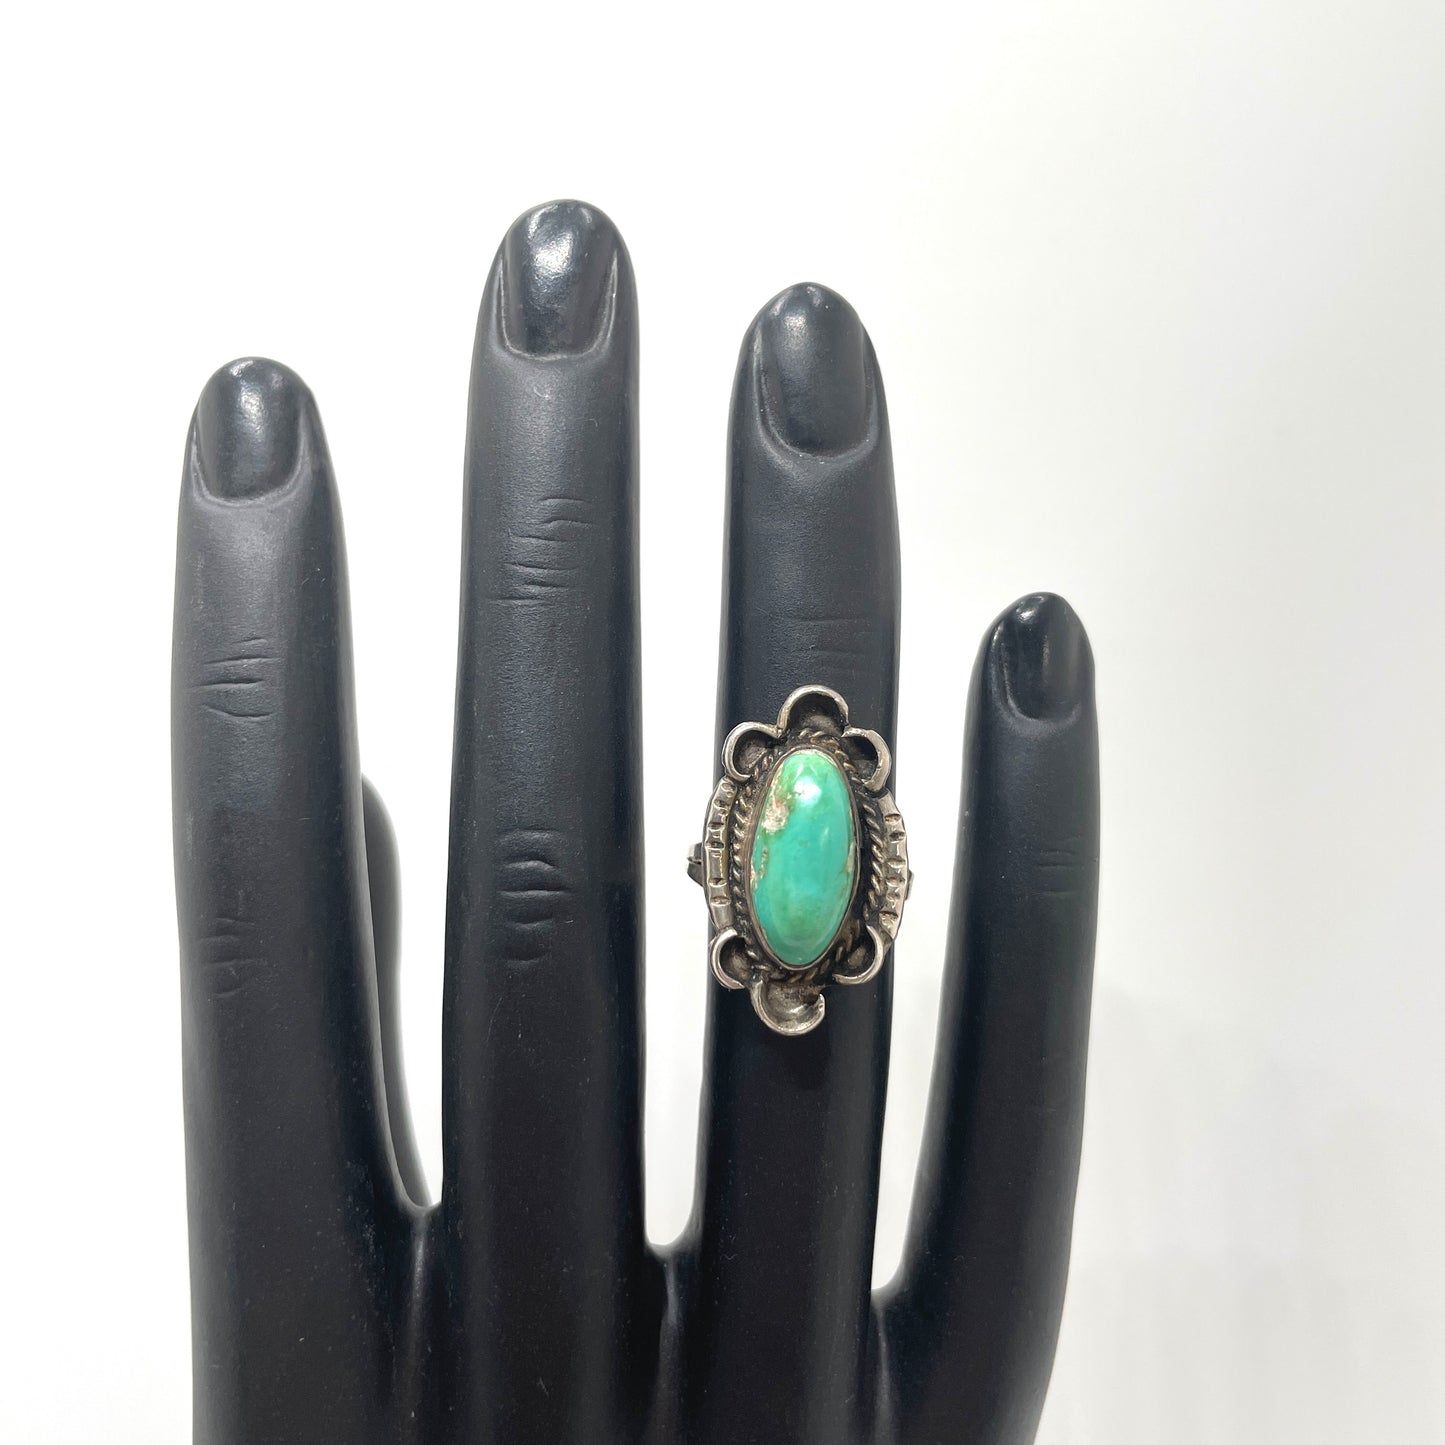 Vintage Turquoise Artisan Ring - Size 5